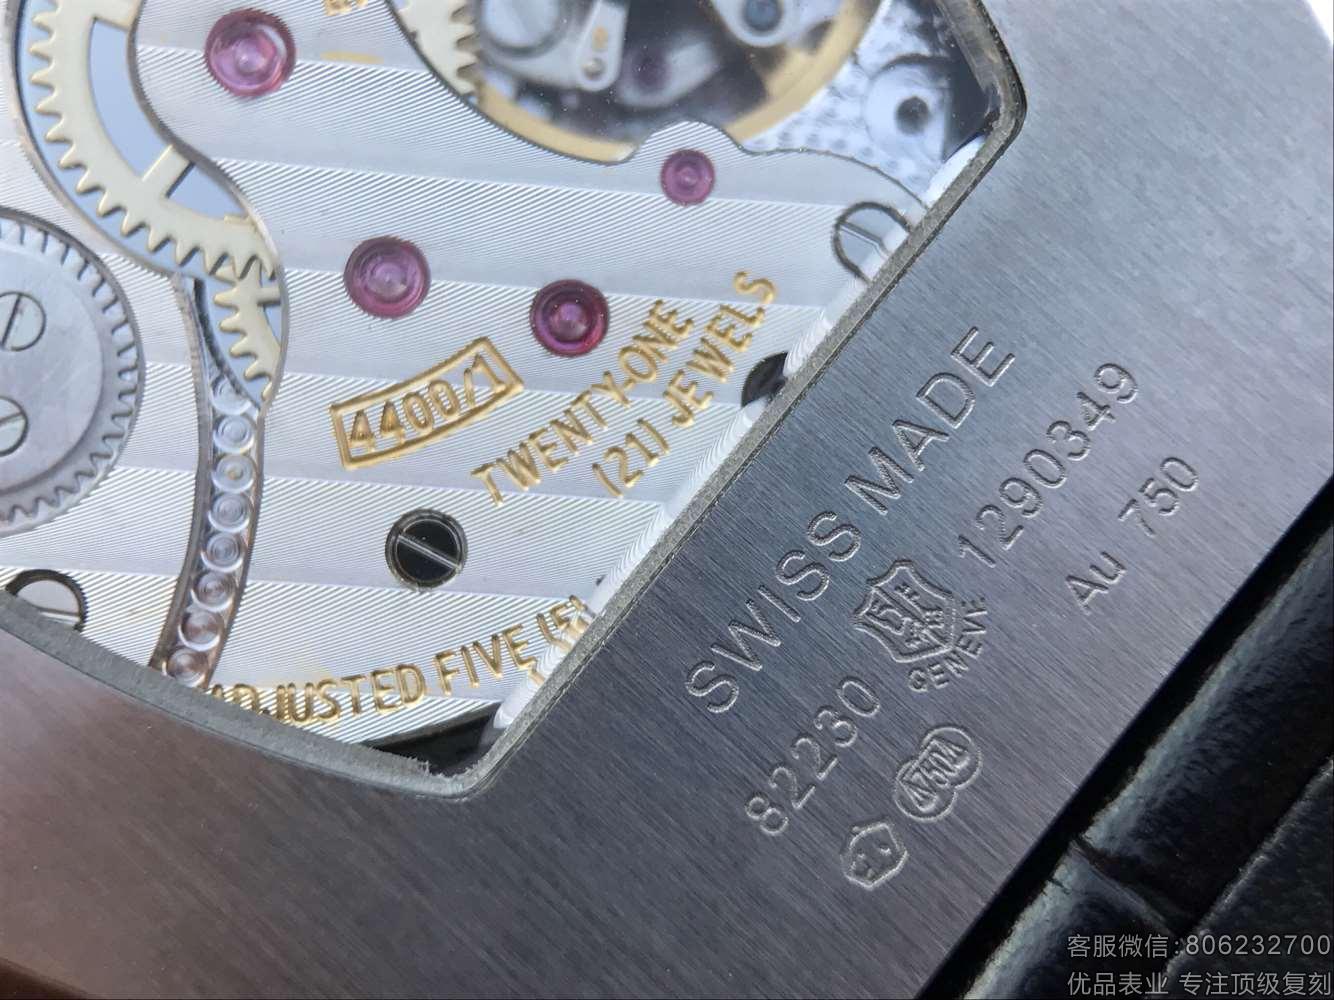 江诗丹顿顶级复刻马耳他系列82230/000G-9185腕表